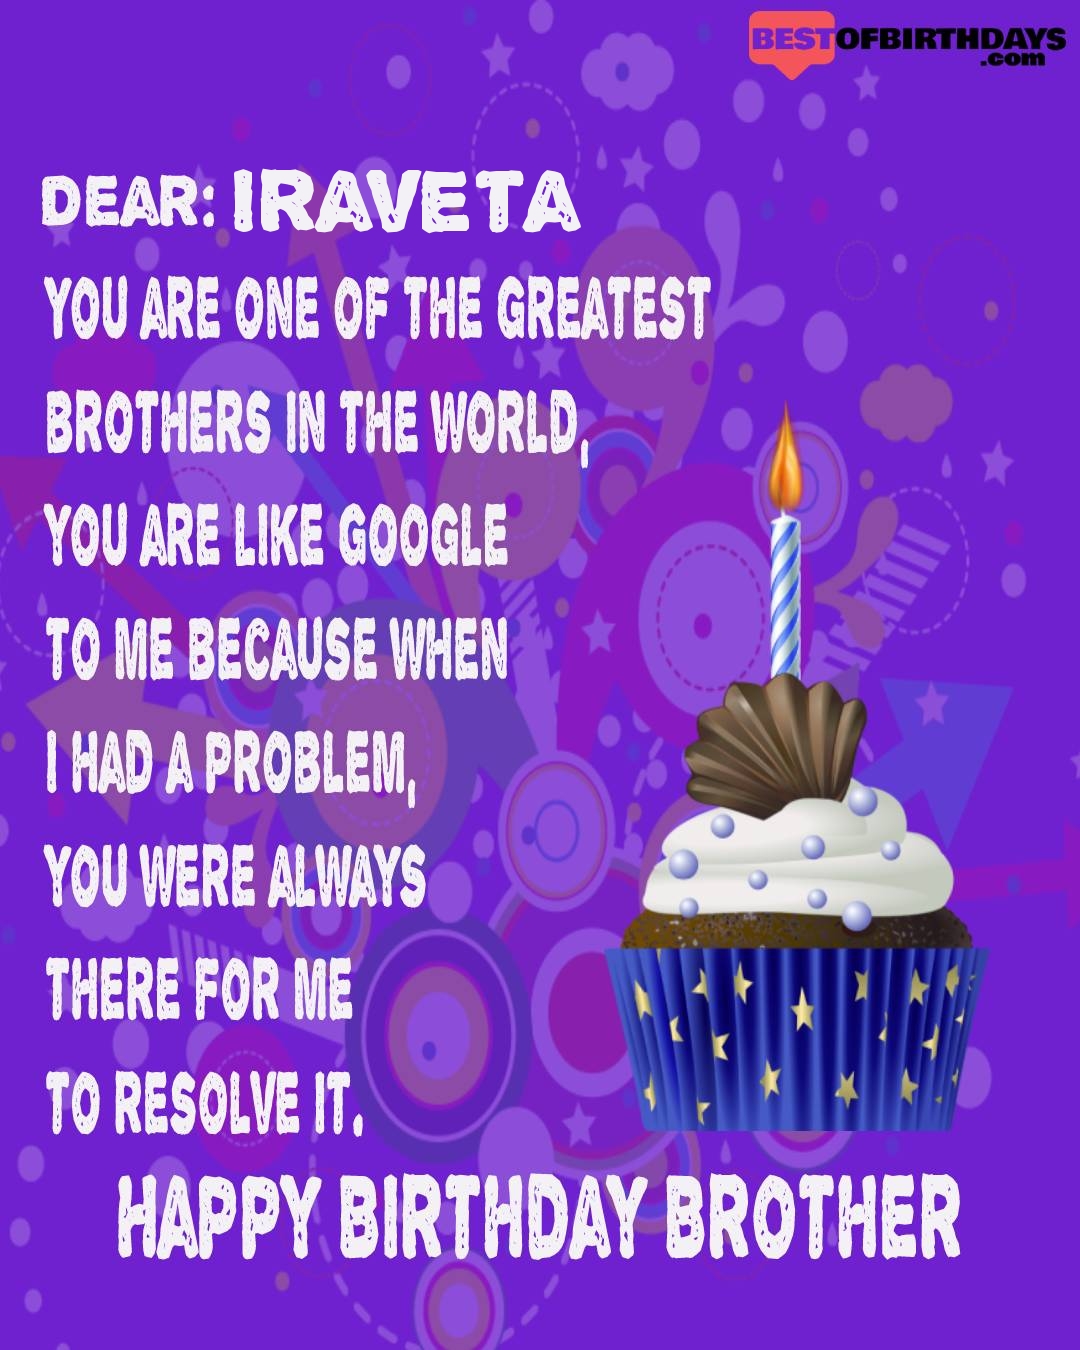 Happy birthday iraveta bhai brother bro